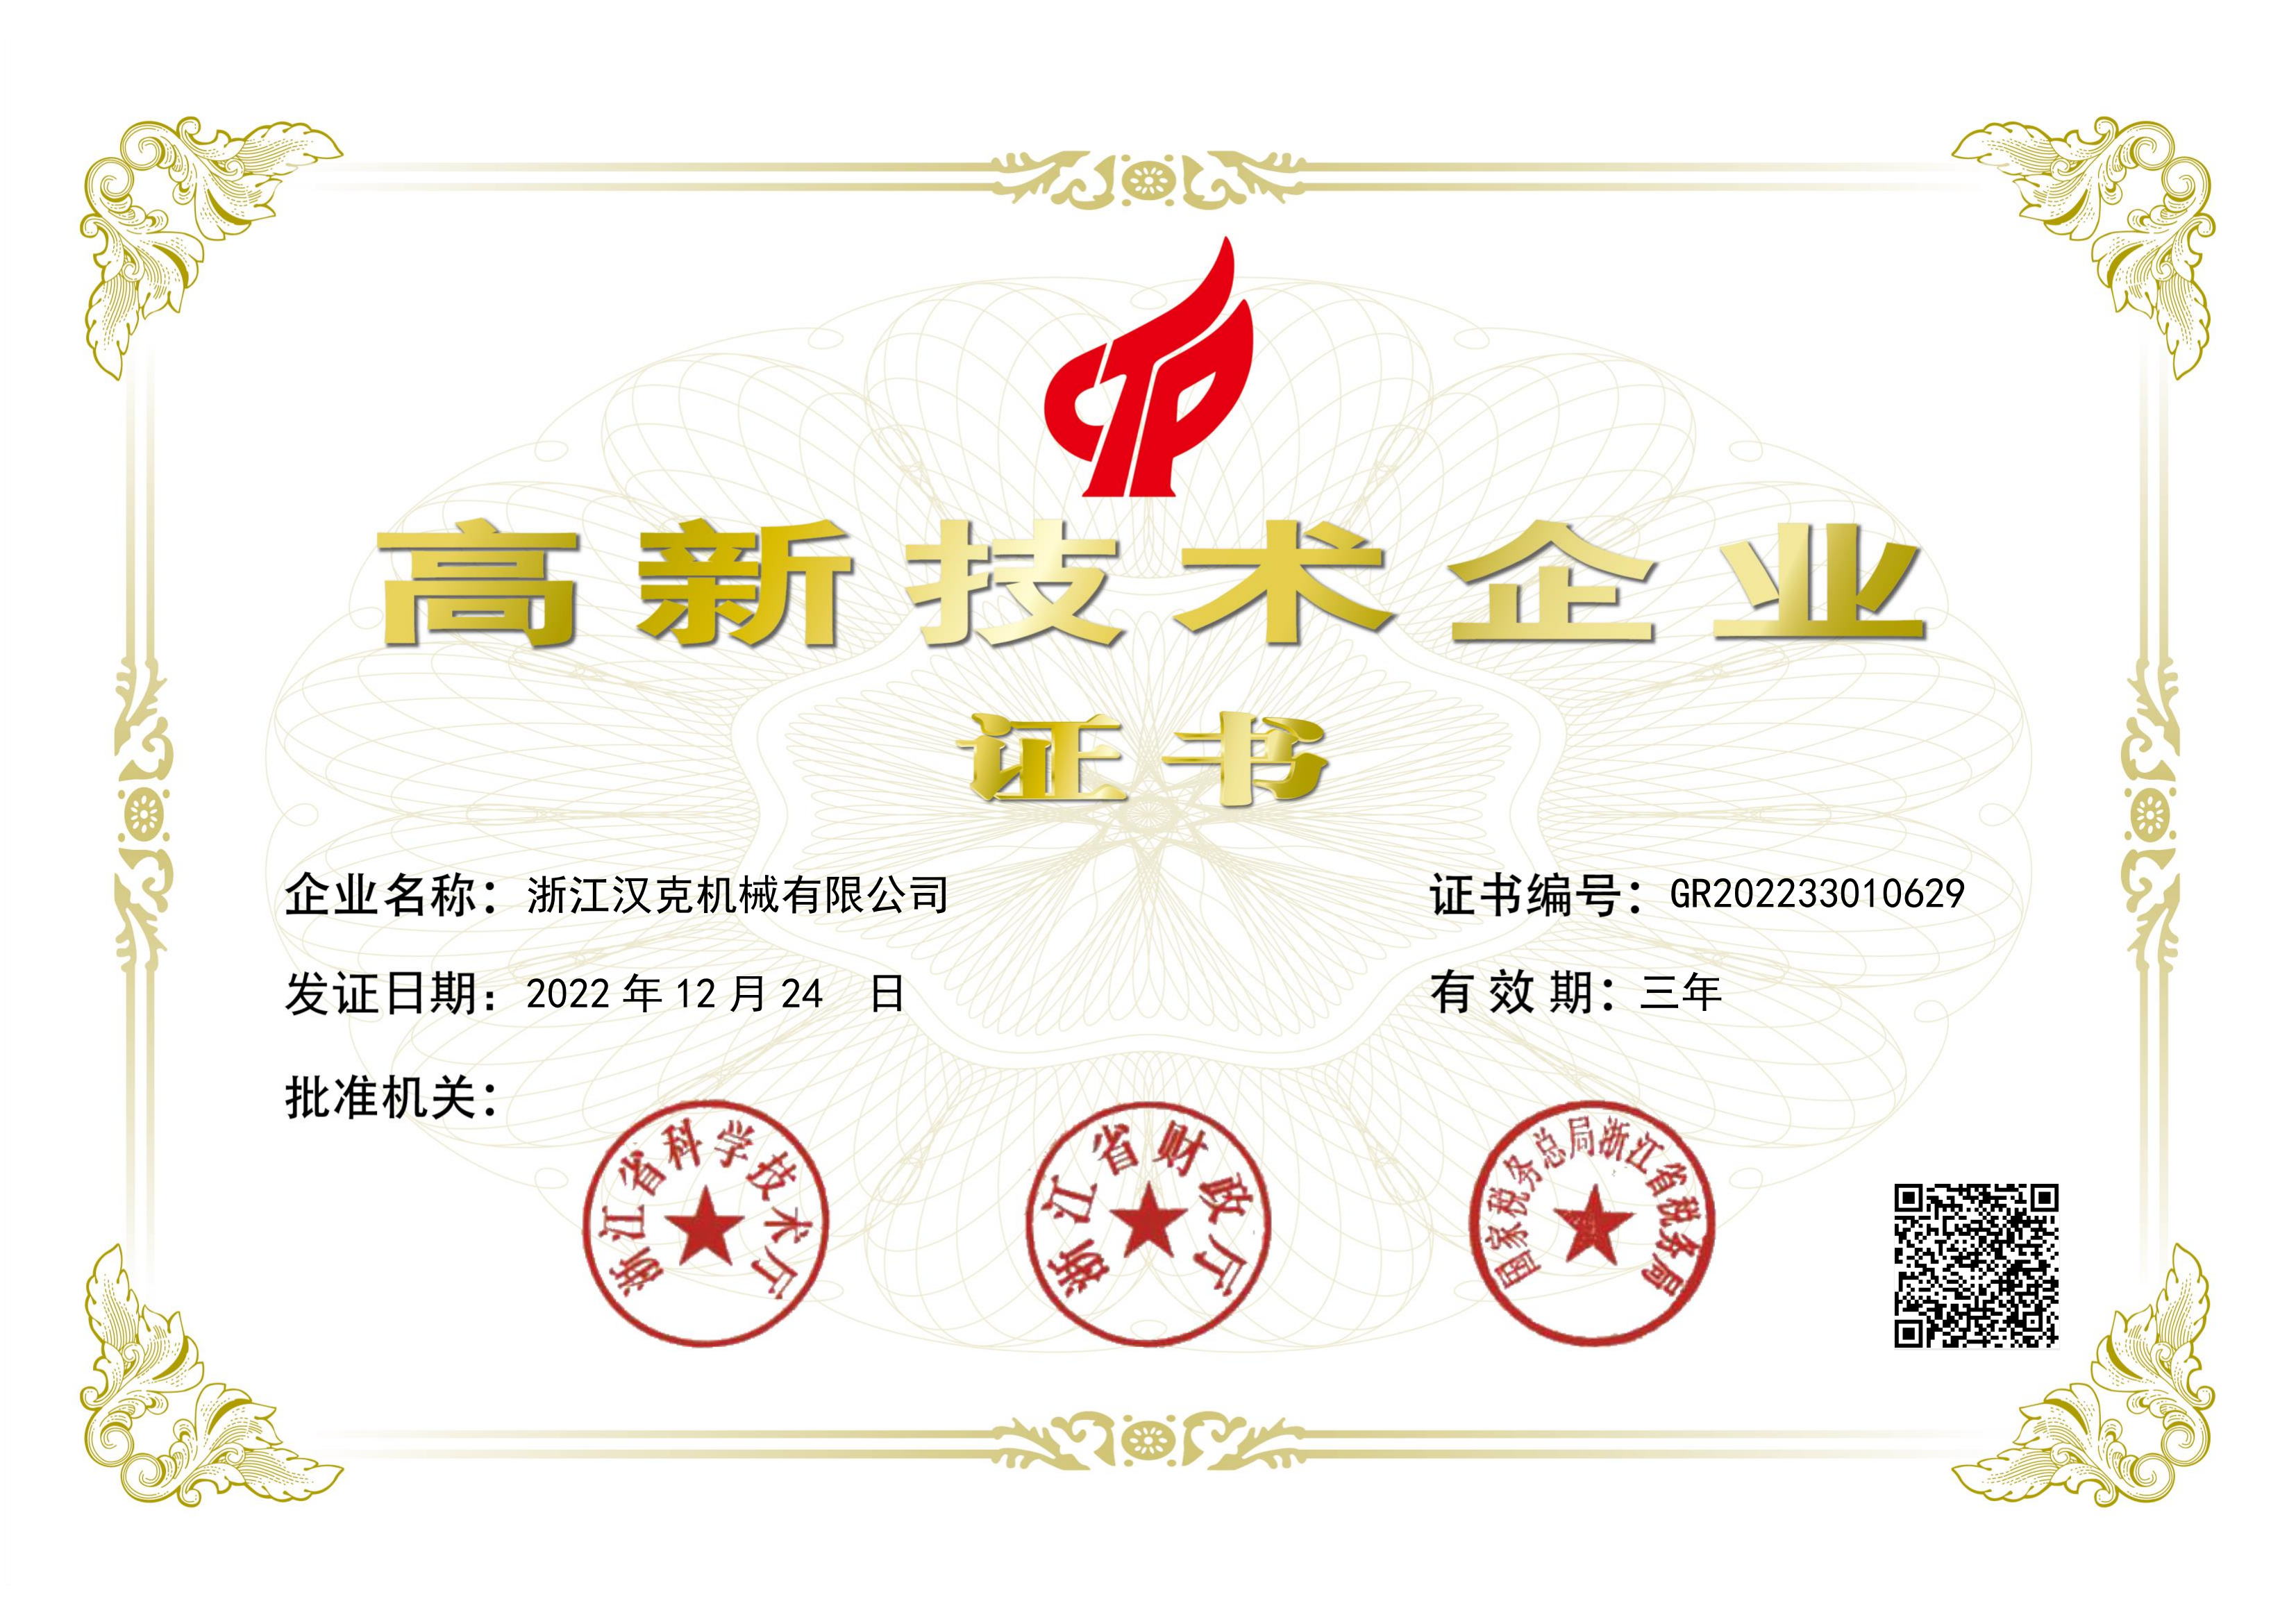 Zhejiang HEC Қытай 2022 жоғары технологиялық кәсіпорындар тізімінде.